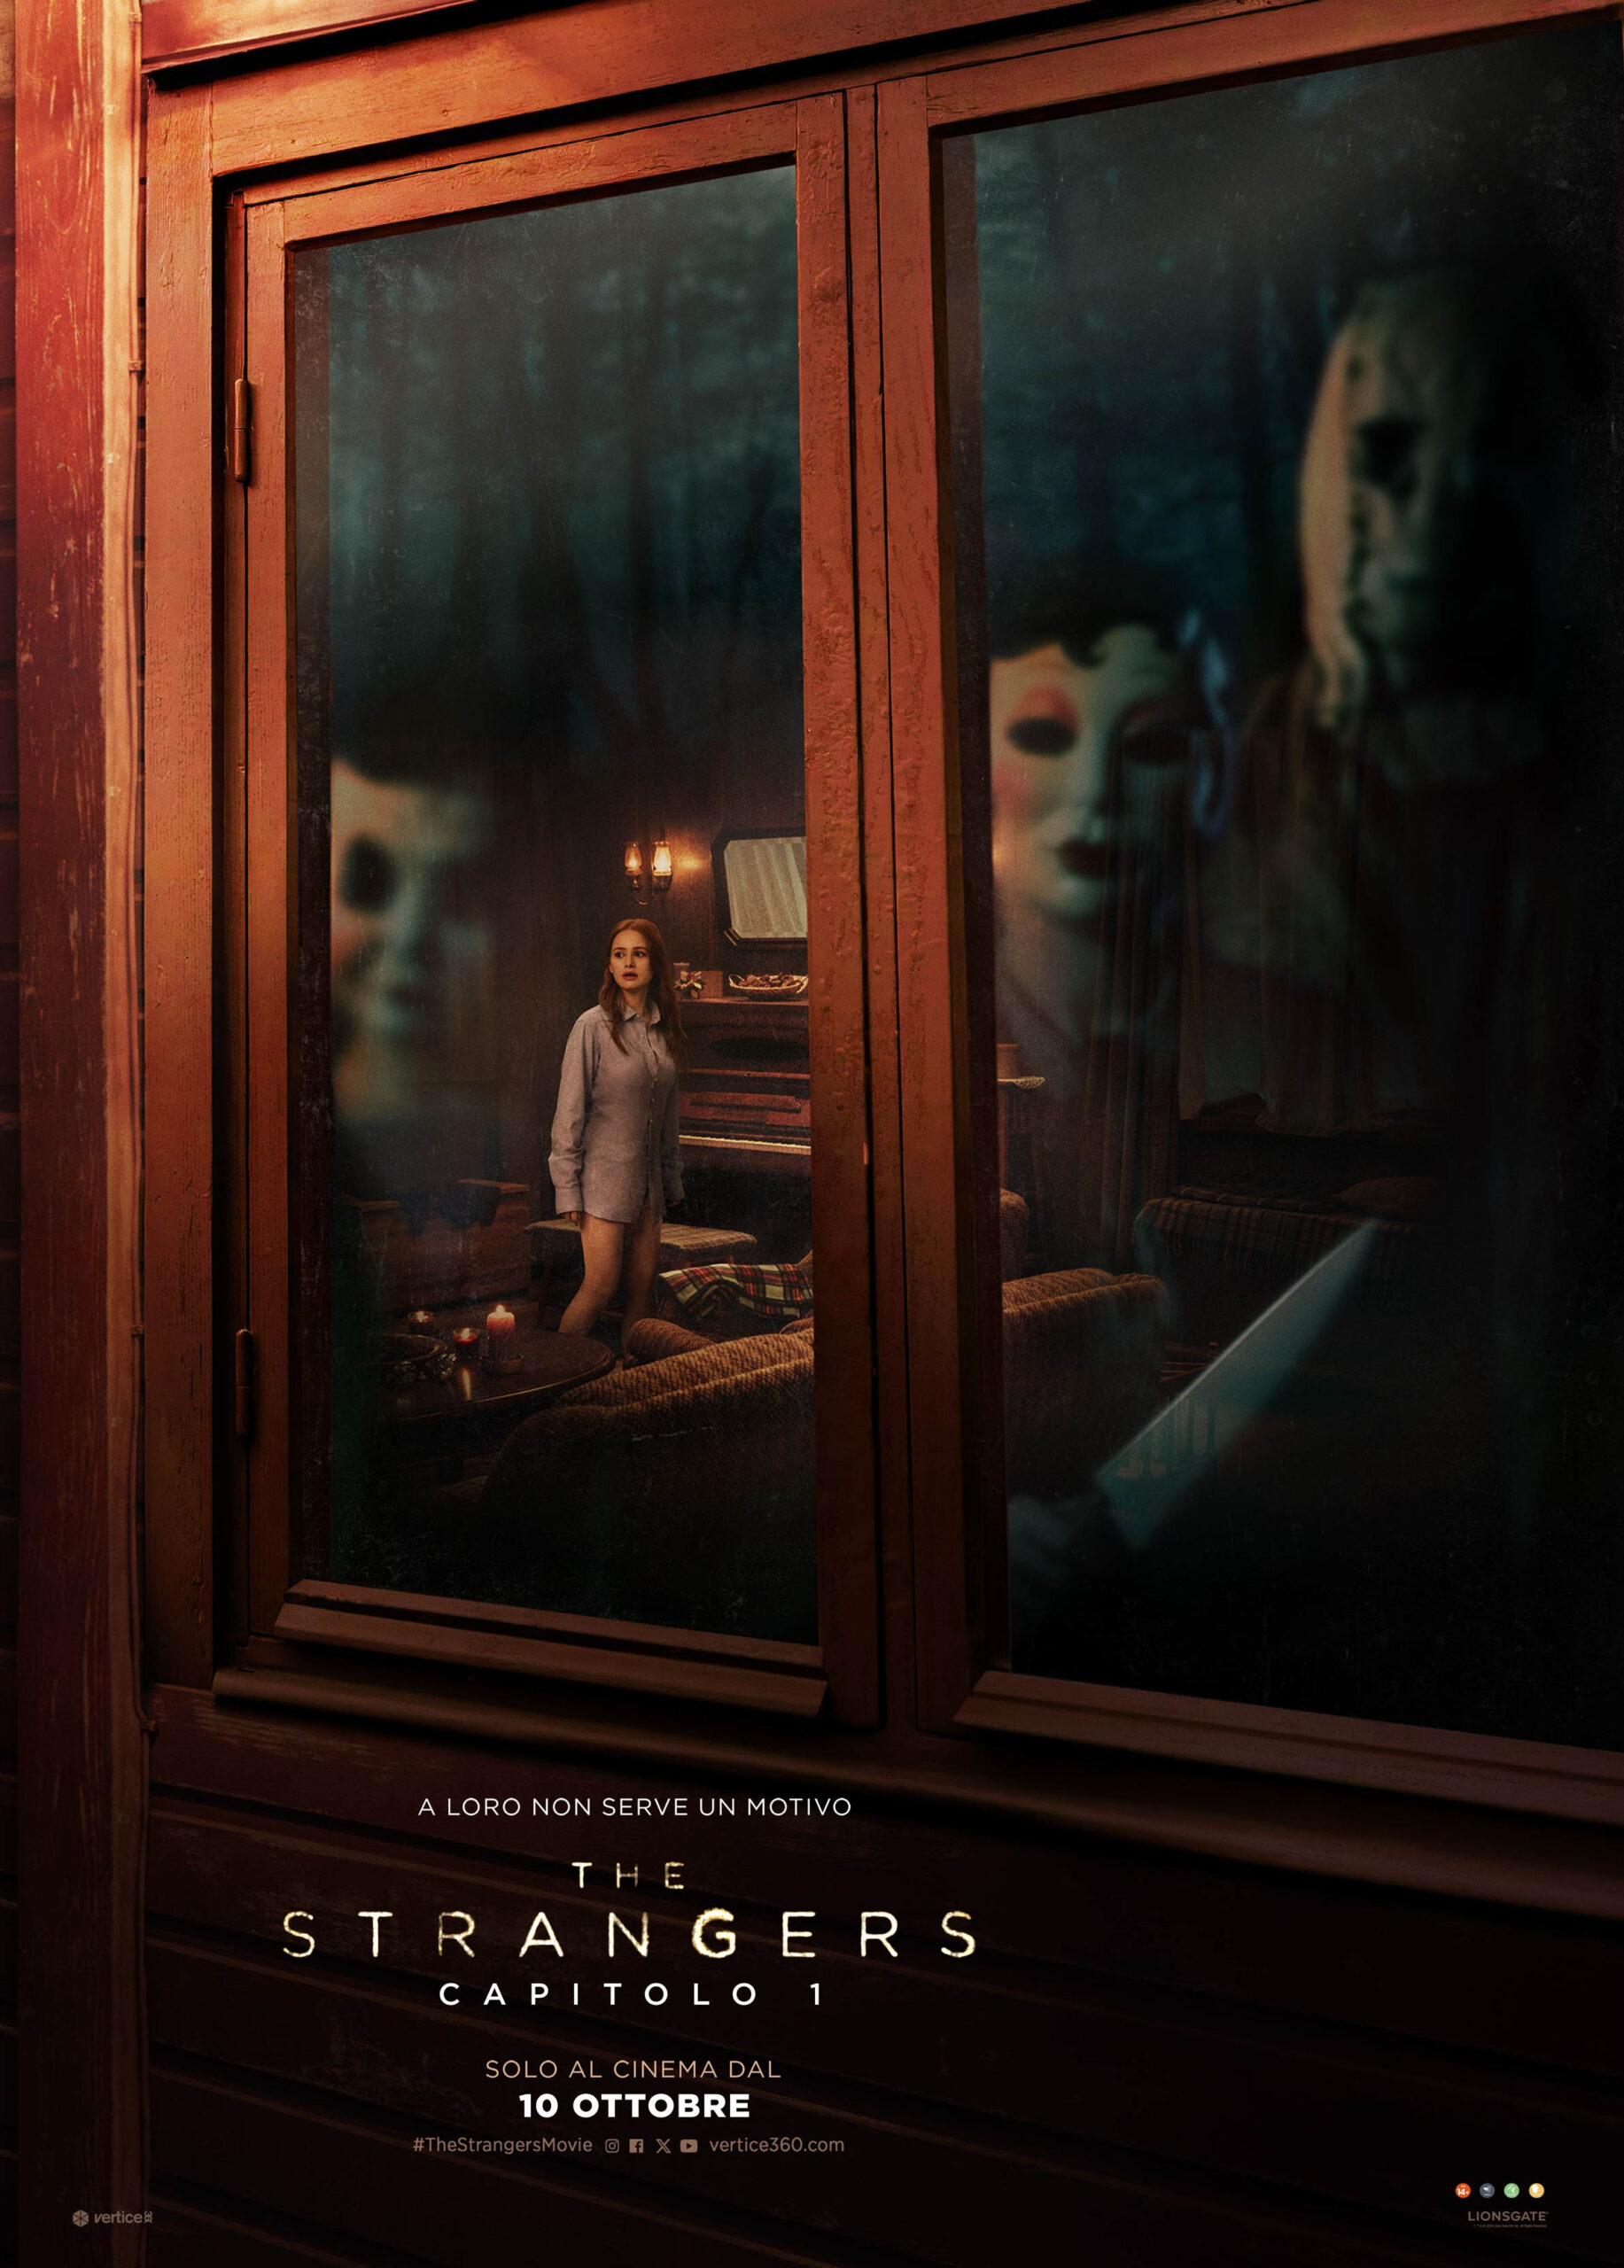 THE STRANGERS: Capitolo 1, Nuova data di uscita per il primo terrificante film della trilogia horror